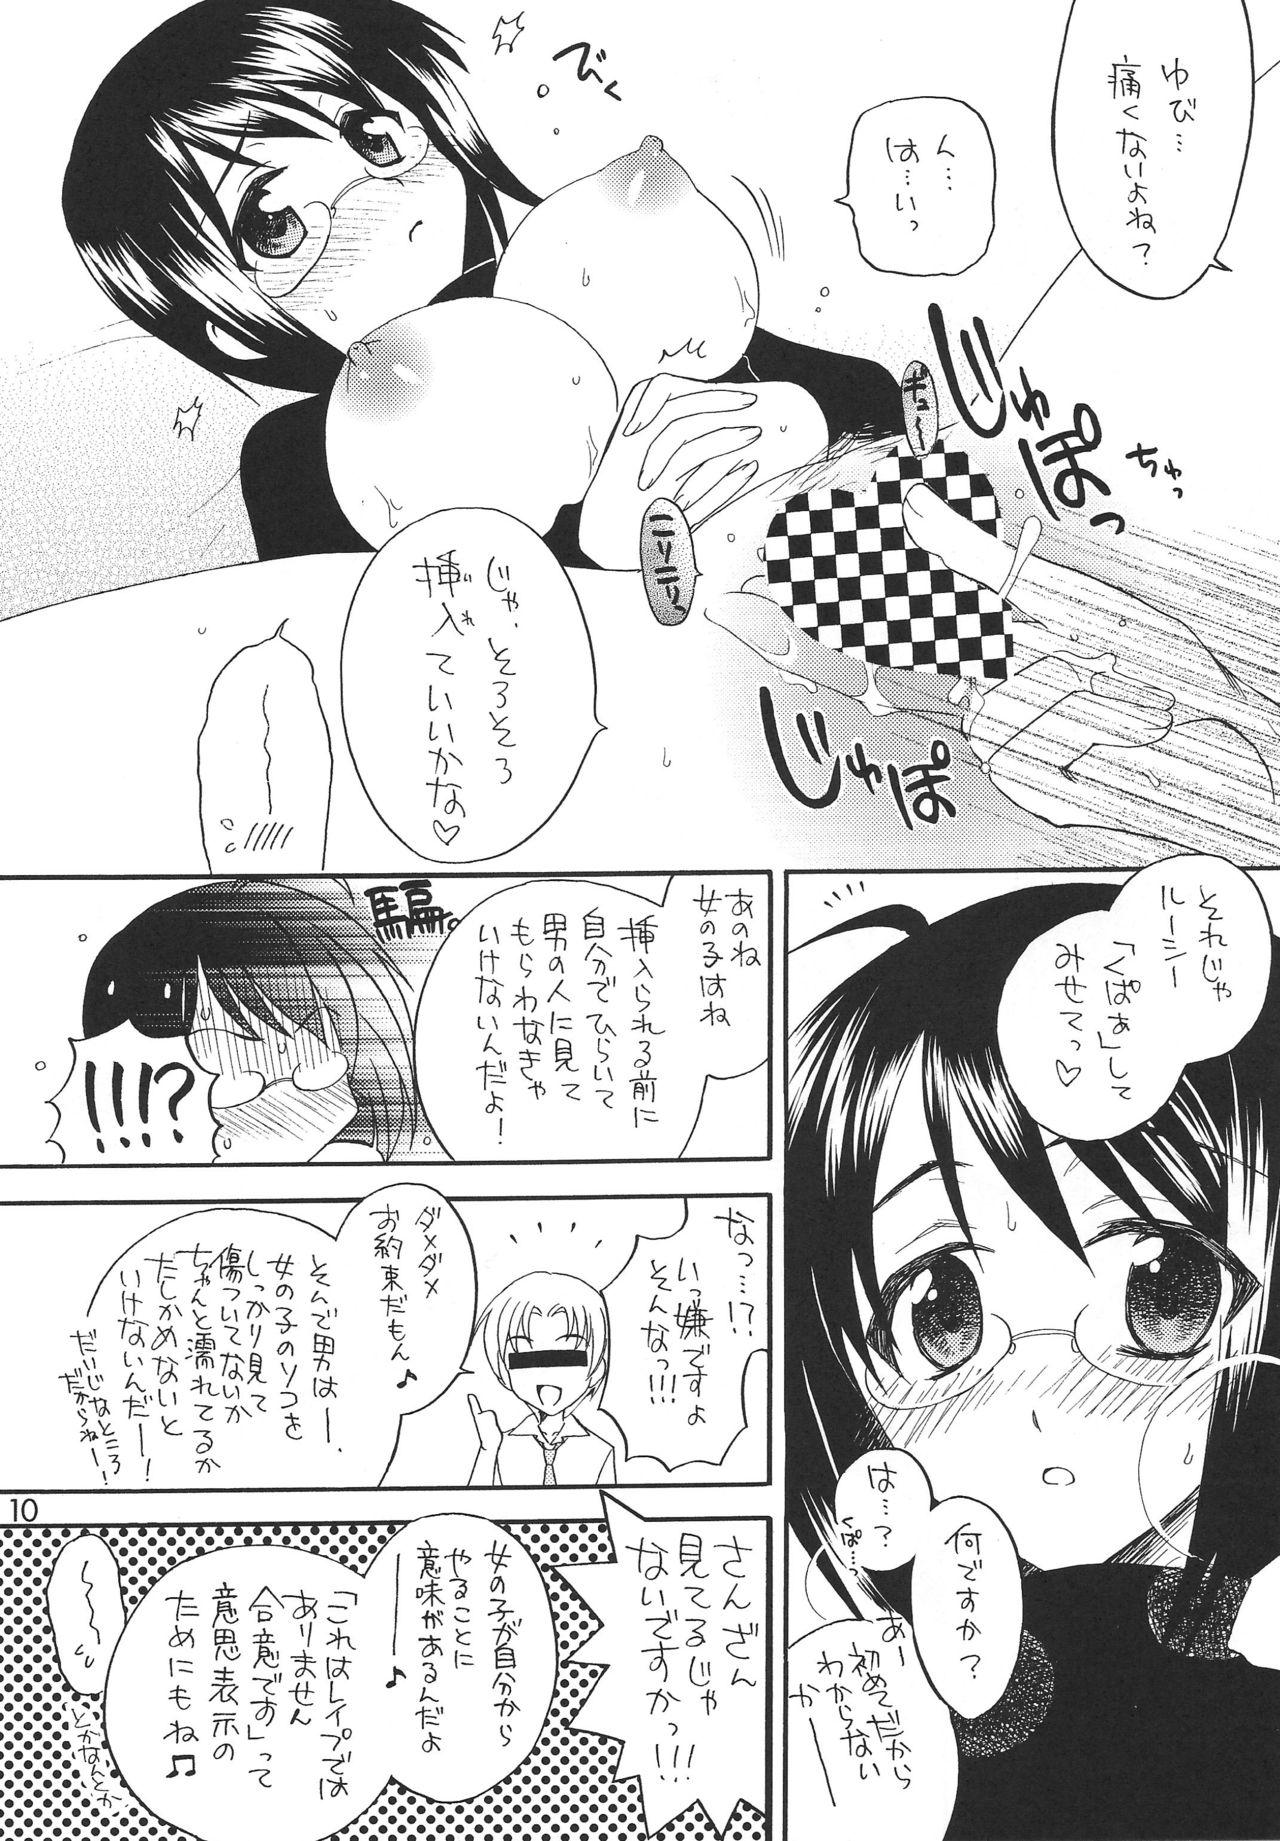 Public Lucy ga Sukisugite Ikiru no ga Tsurai + Omake - Servant x service Peitos - Page 9